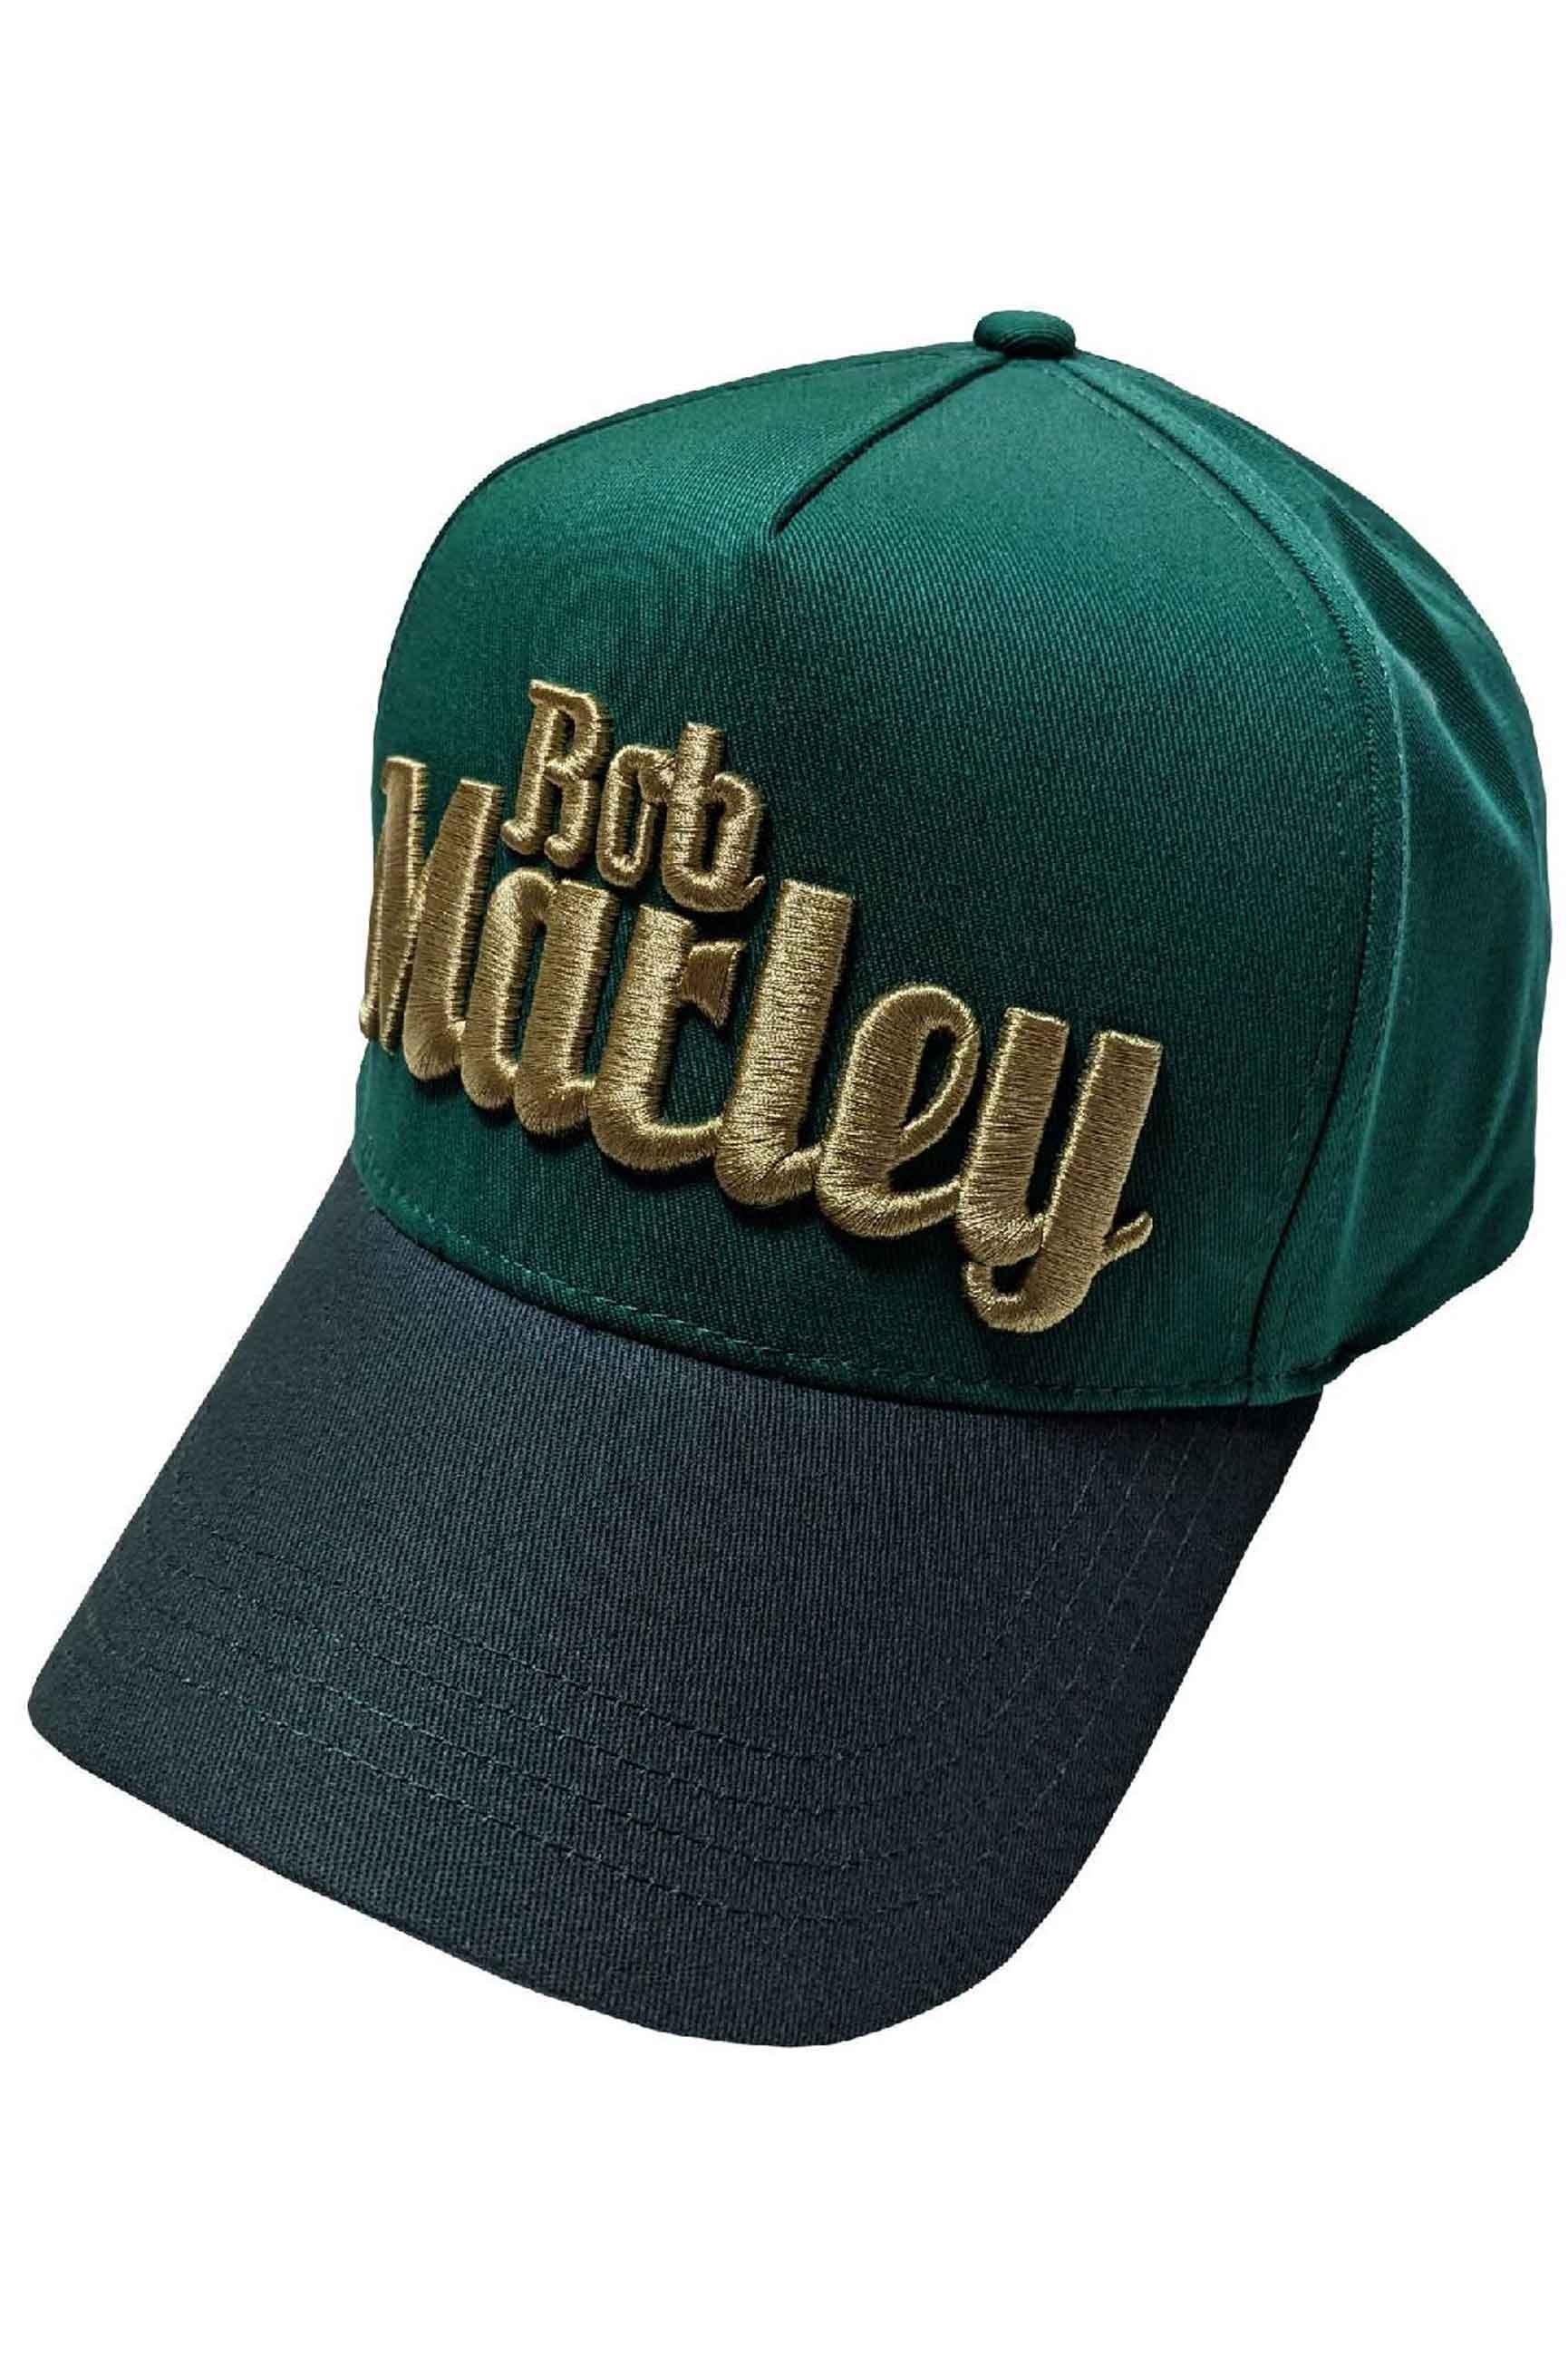 Бейсбольная кепка Trucker с текстовым логотипом Bob Marley, зеленый плоская кепка с мелким узором модель gatsby müller headwear темно серый